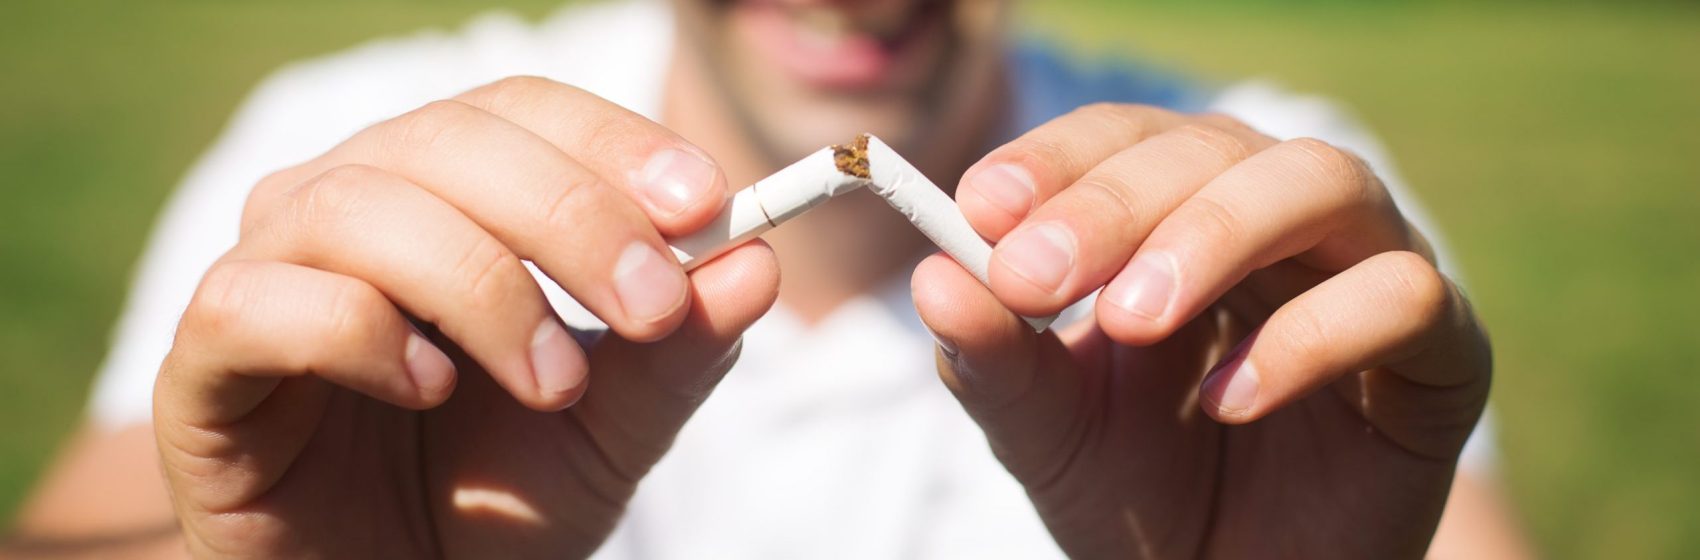 Davantage d’environnements sans tabac